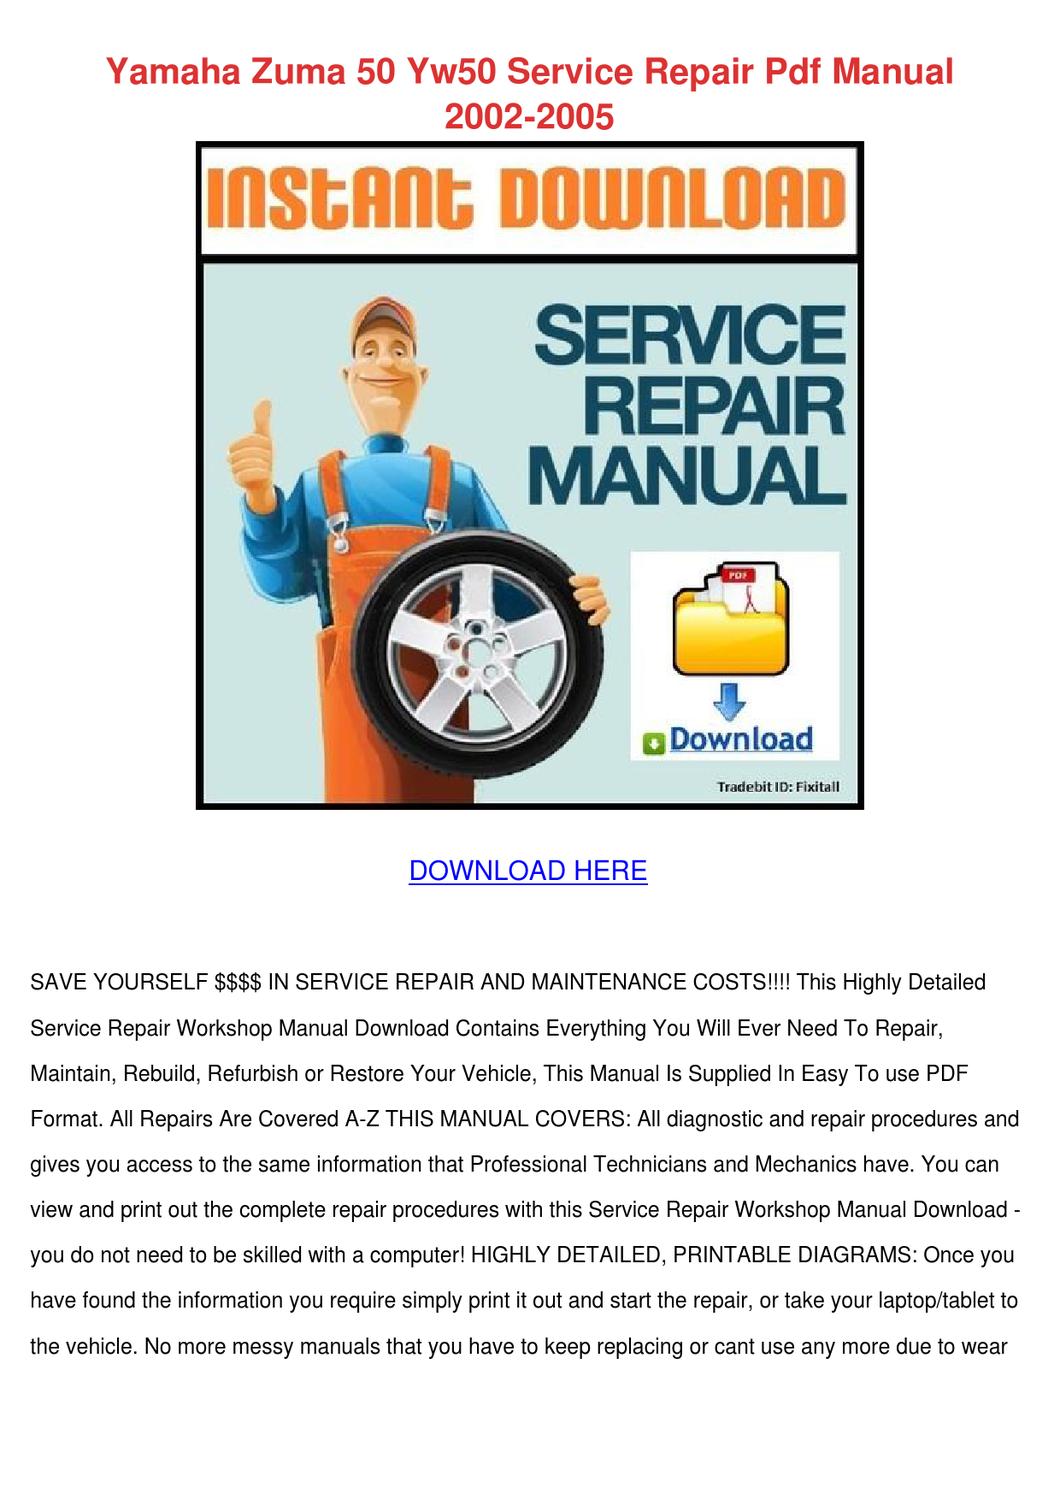 Yamaha zuma 50 service manual